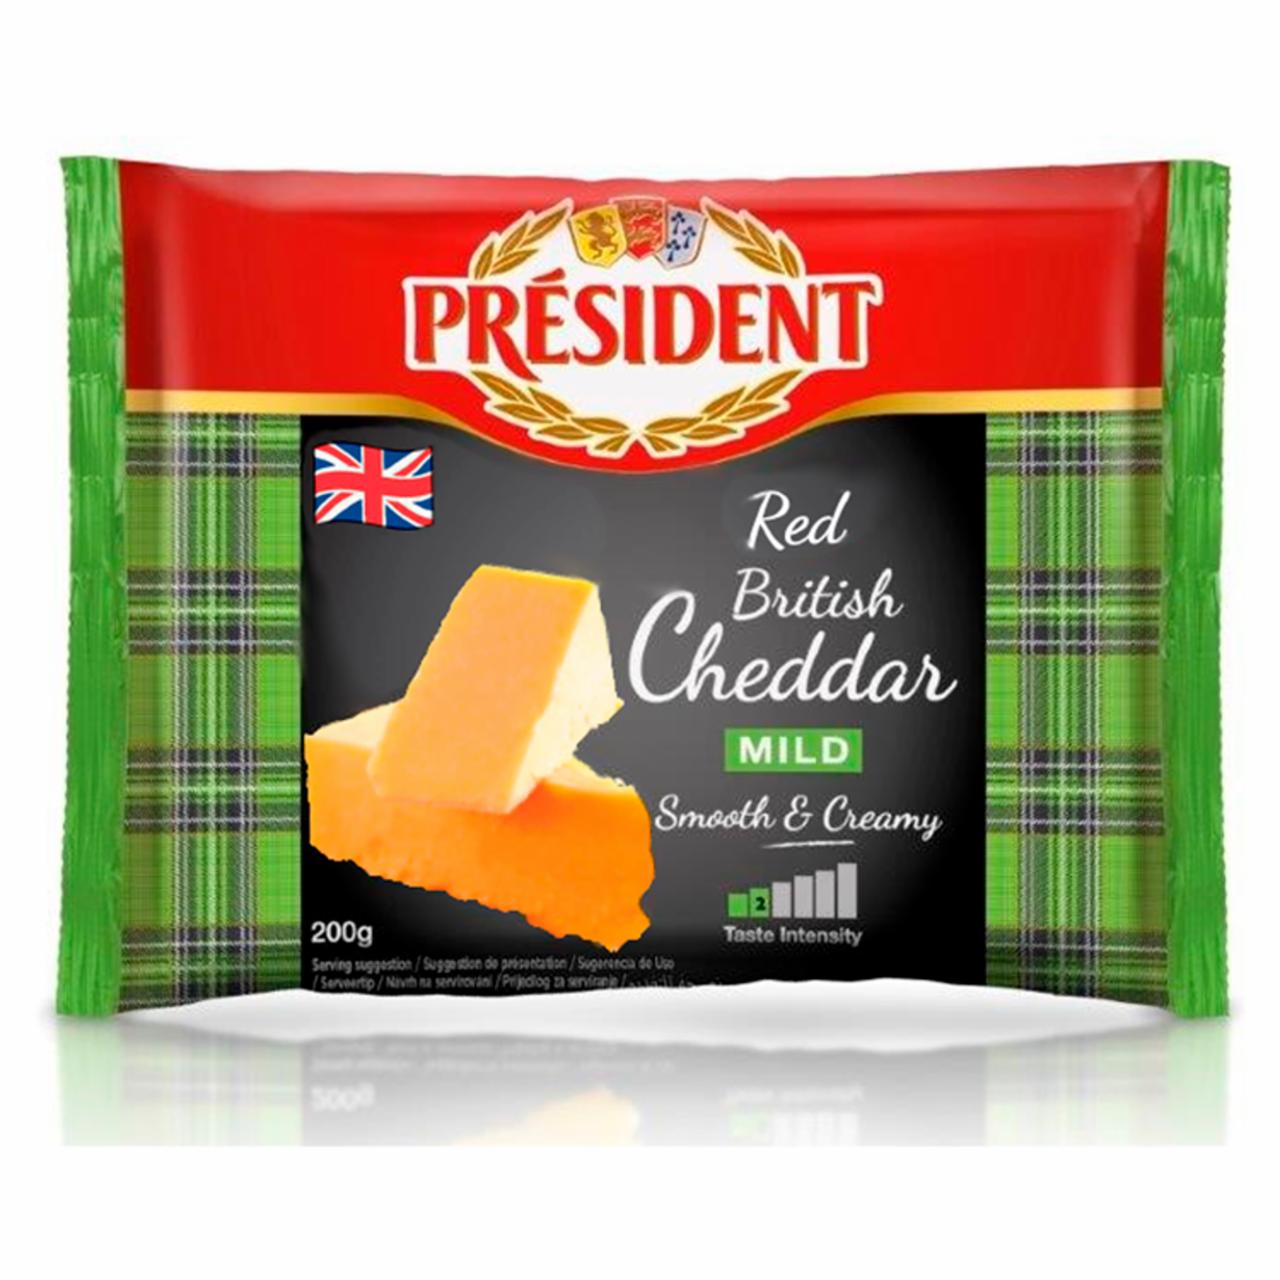 Képek - Président zsíros, kemény cheddar sajt 200 g